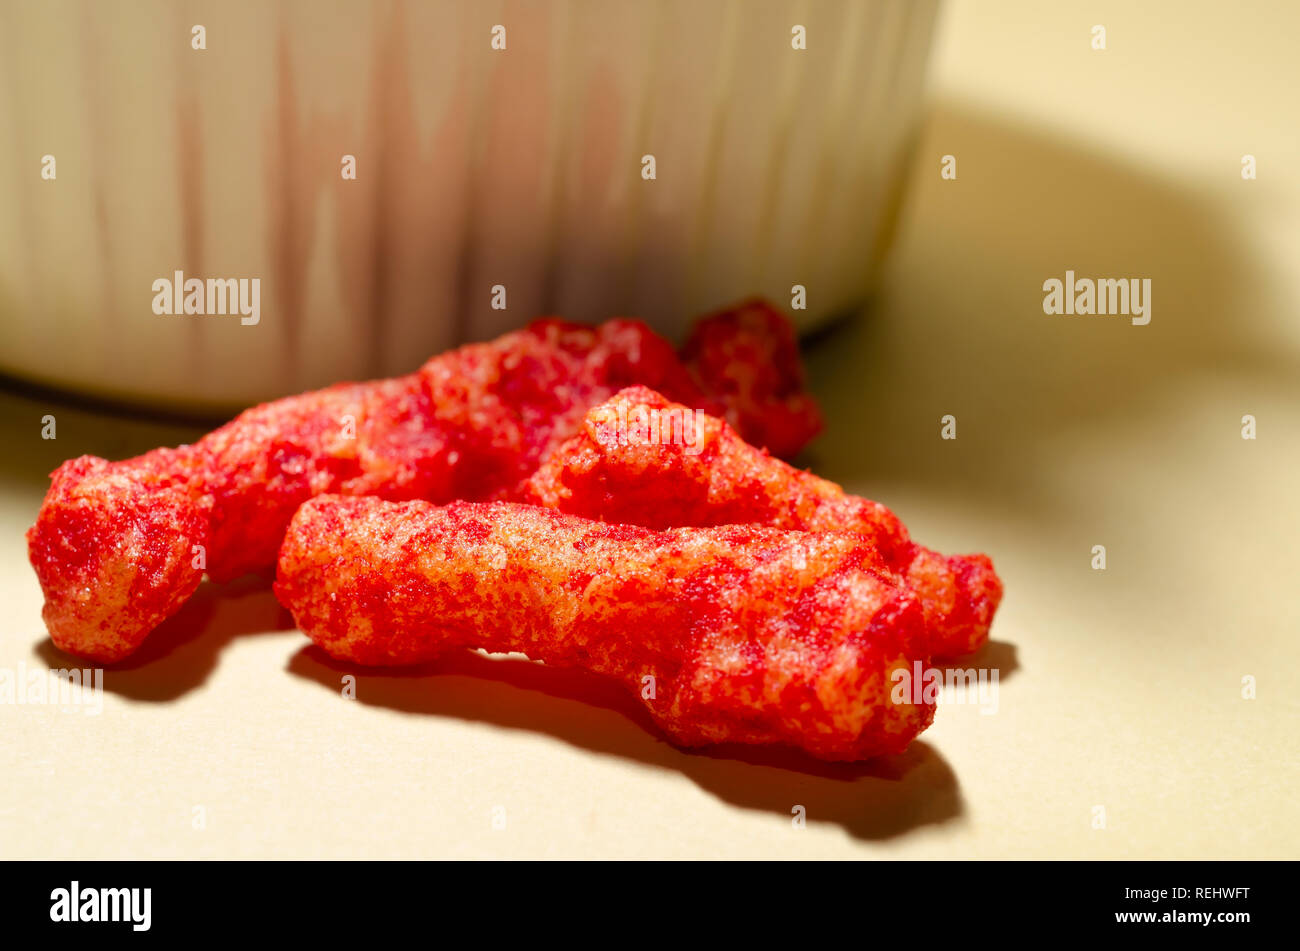 Une vue étroite de Flamin' Hot Cheetos révèle le chili épicé assaisonnement du fromage en poudre qui recouvre la semoule gonflée snack. Banque D'Images